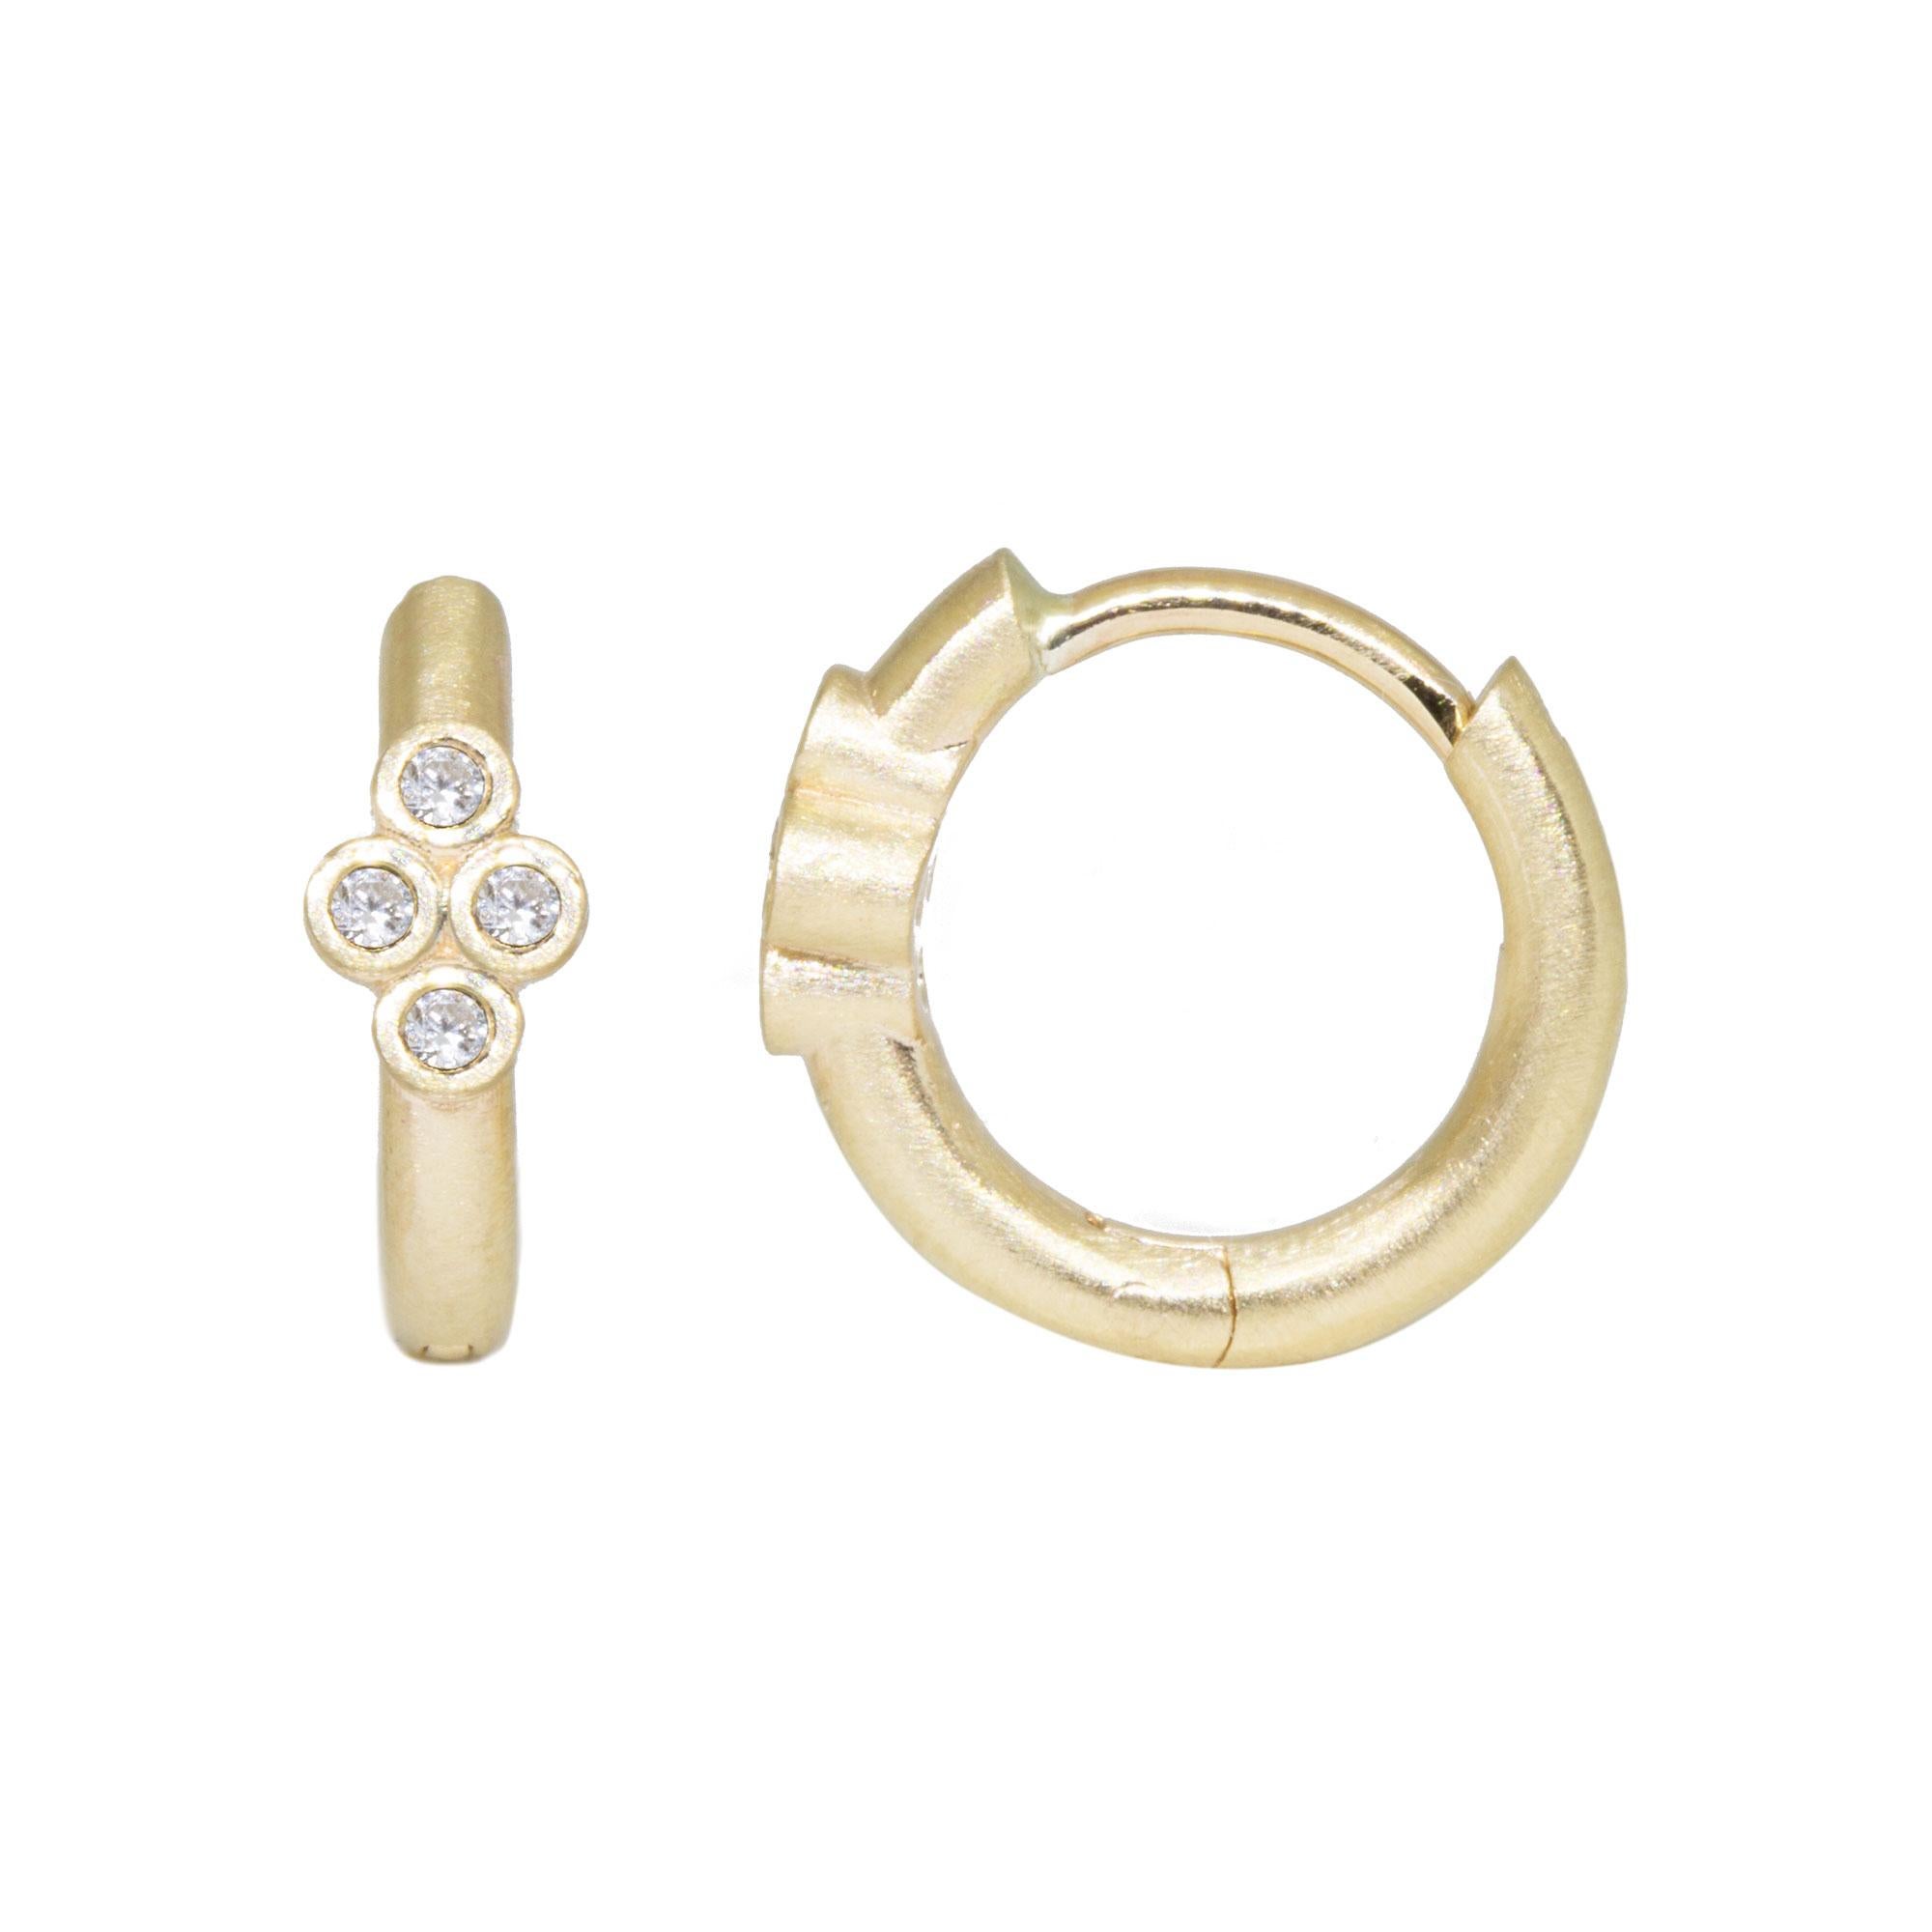 Les boucles d'oreilles sont fabriquées en or 18k pour être hypoallergéniques.

Détails
Métal : Or 14K, Or 18K
Carat du diamant : 0,075
Taille des anneaux : 13mm
Taille du diamant : 1,2 mm